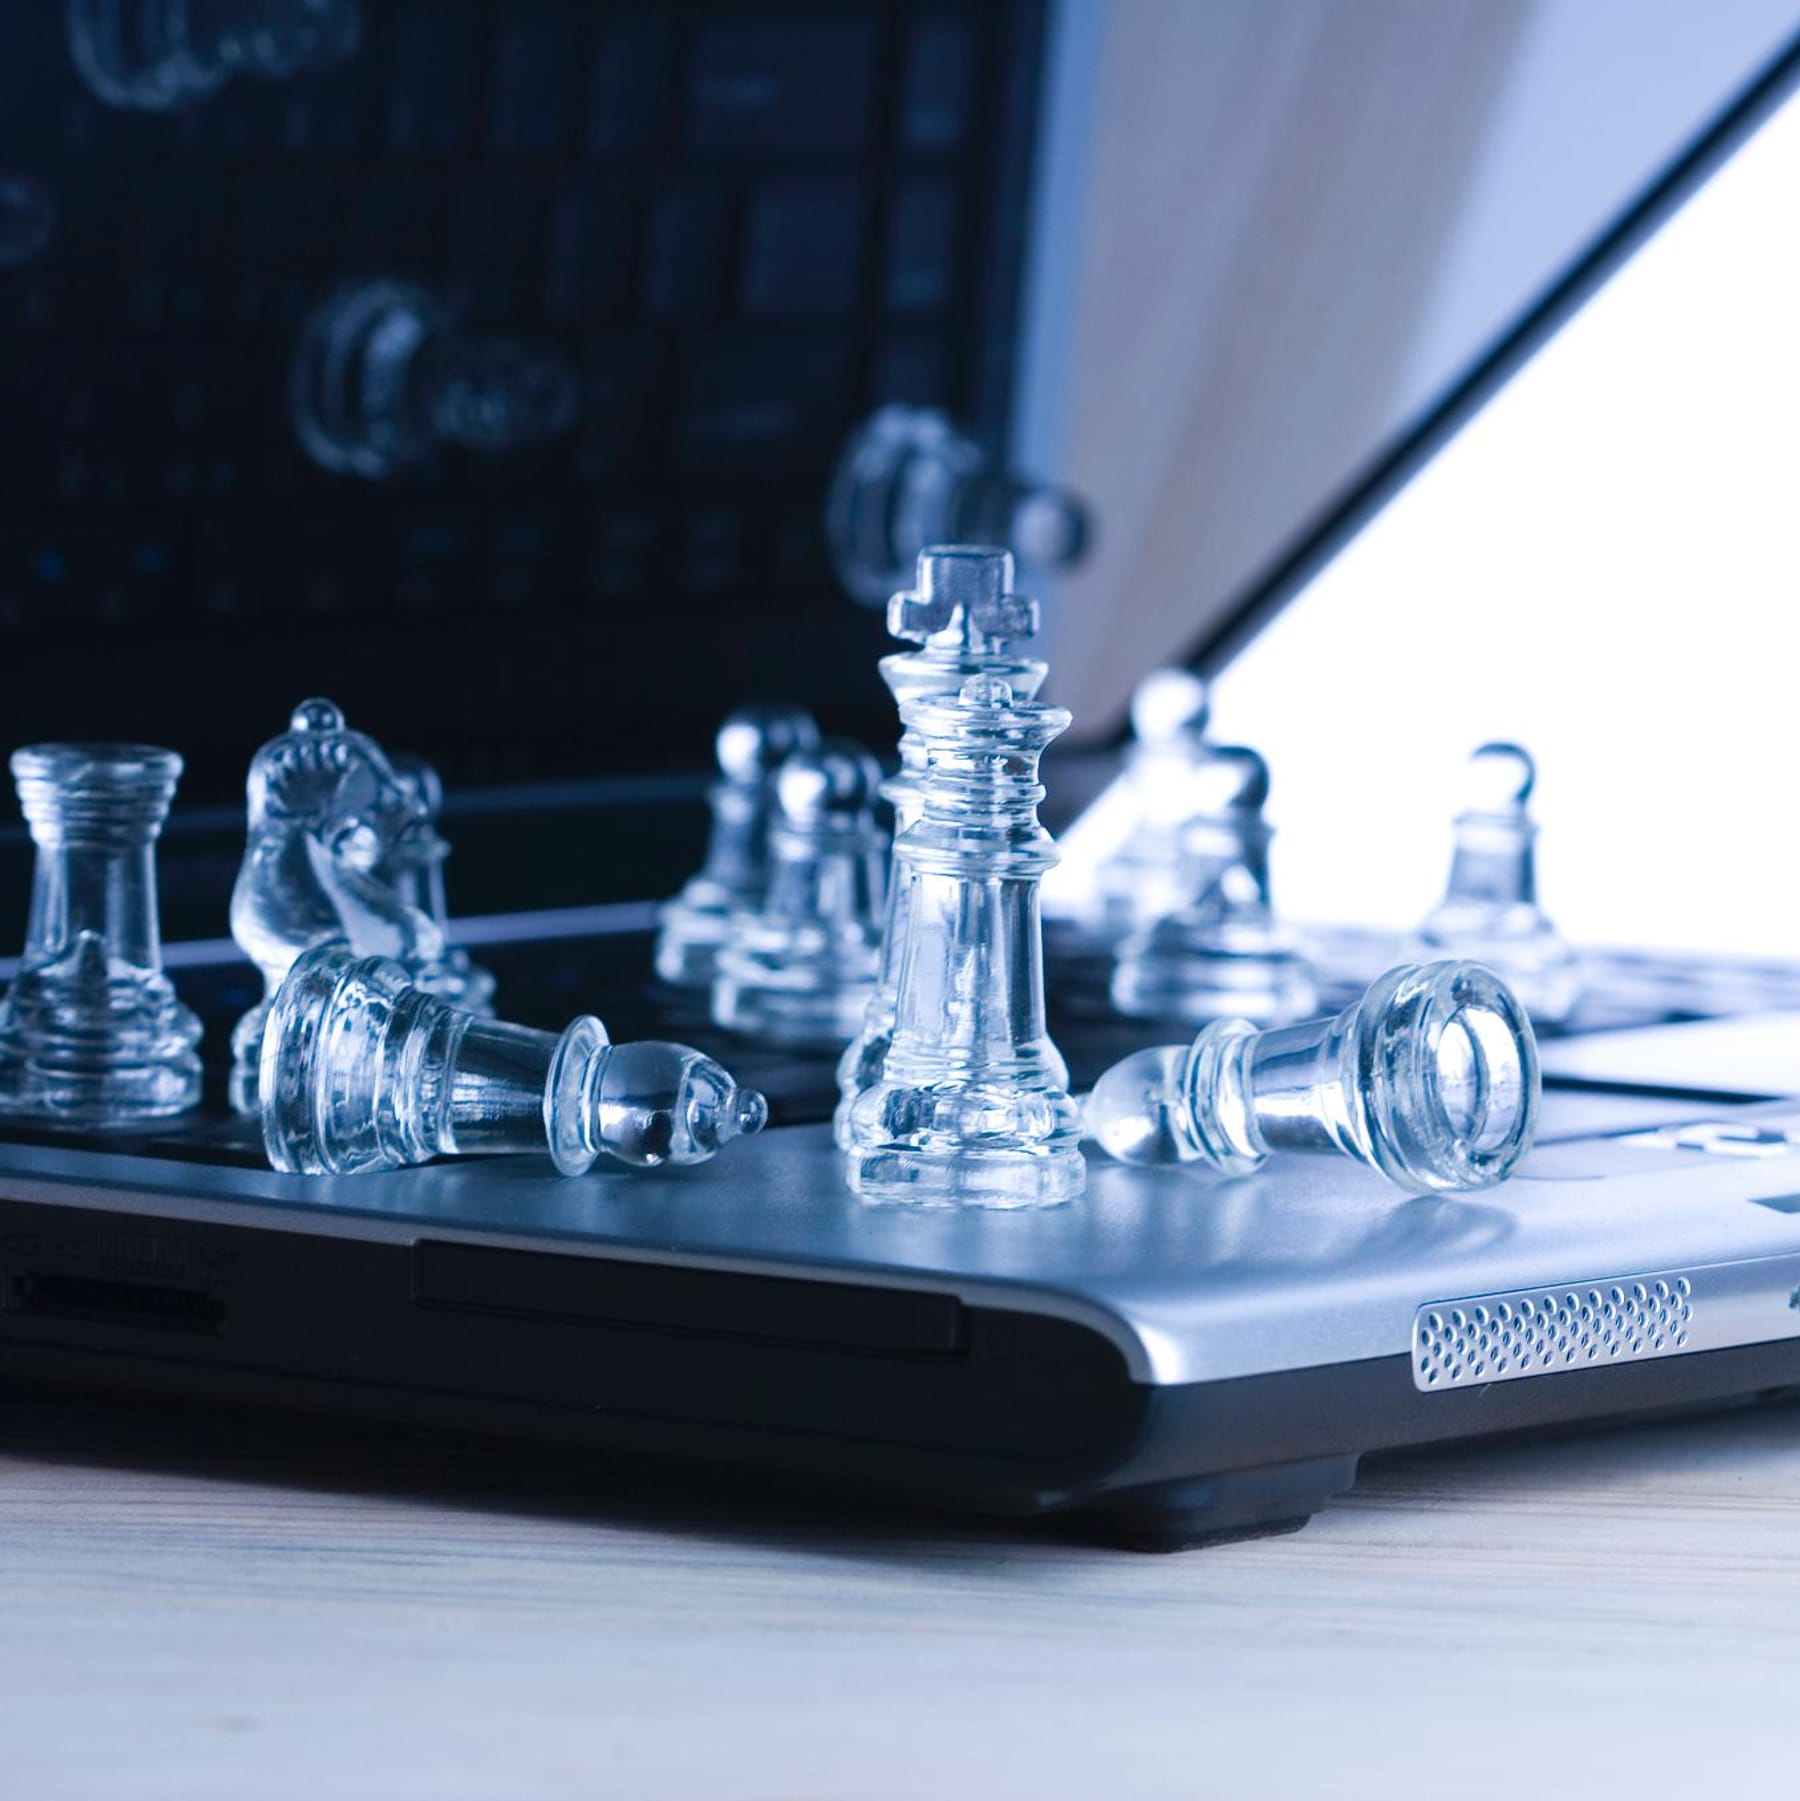 bestes online schach